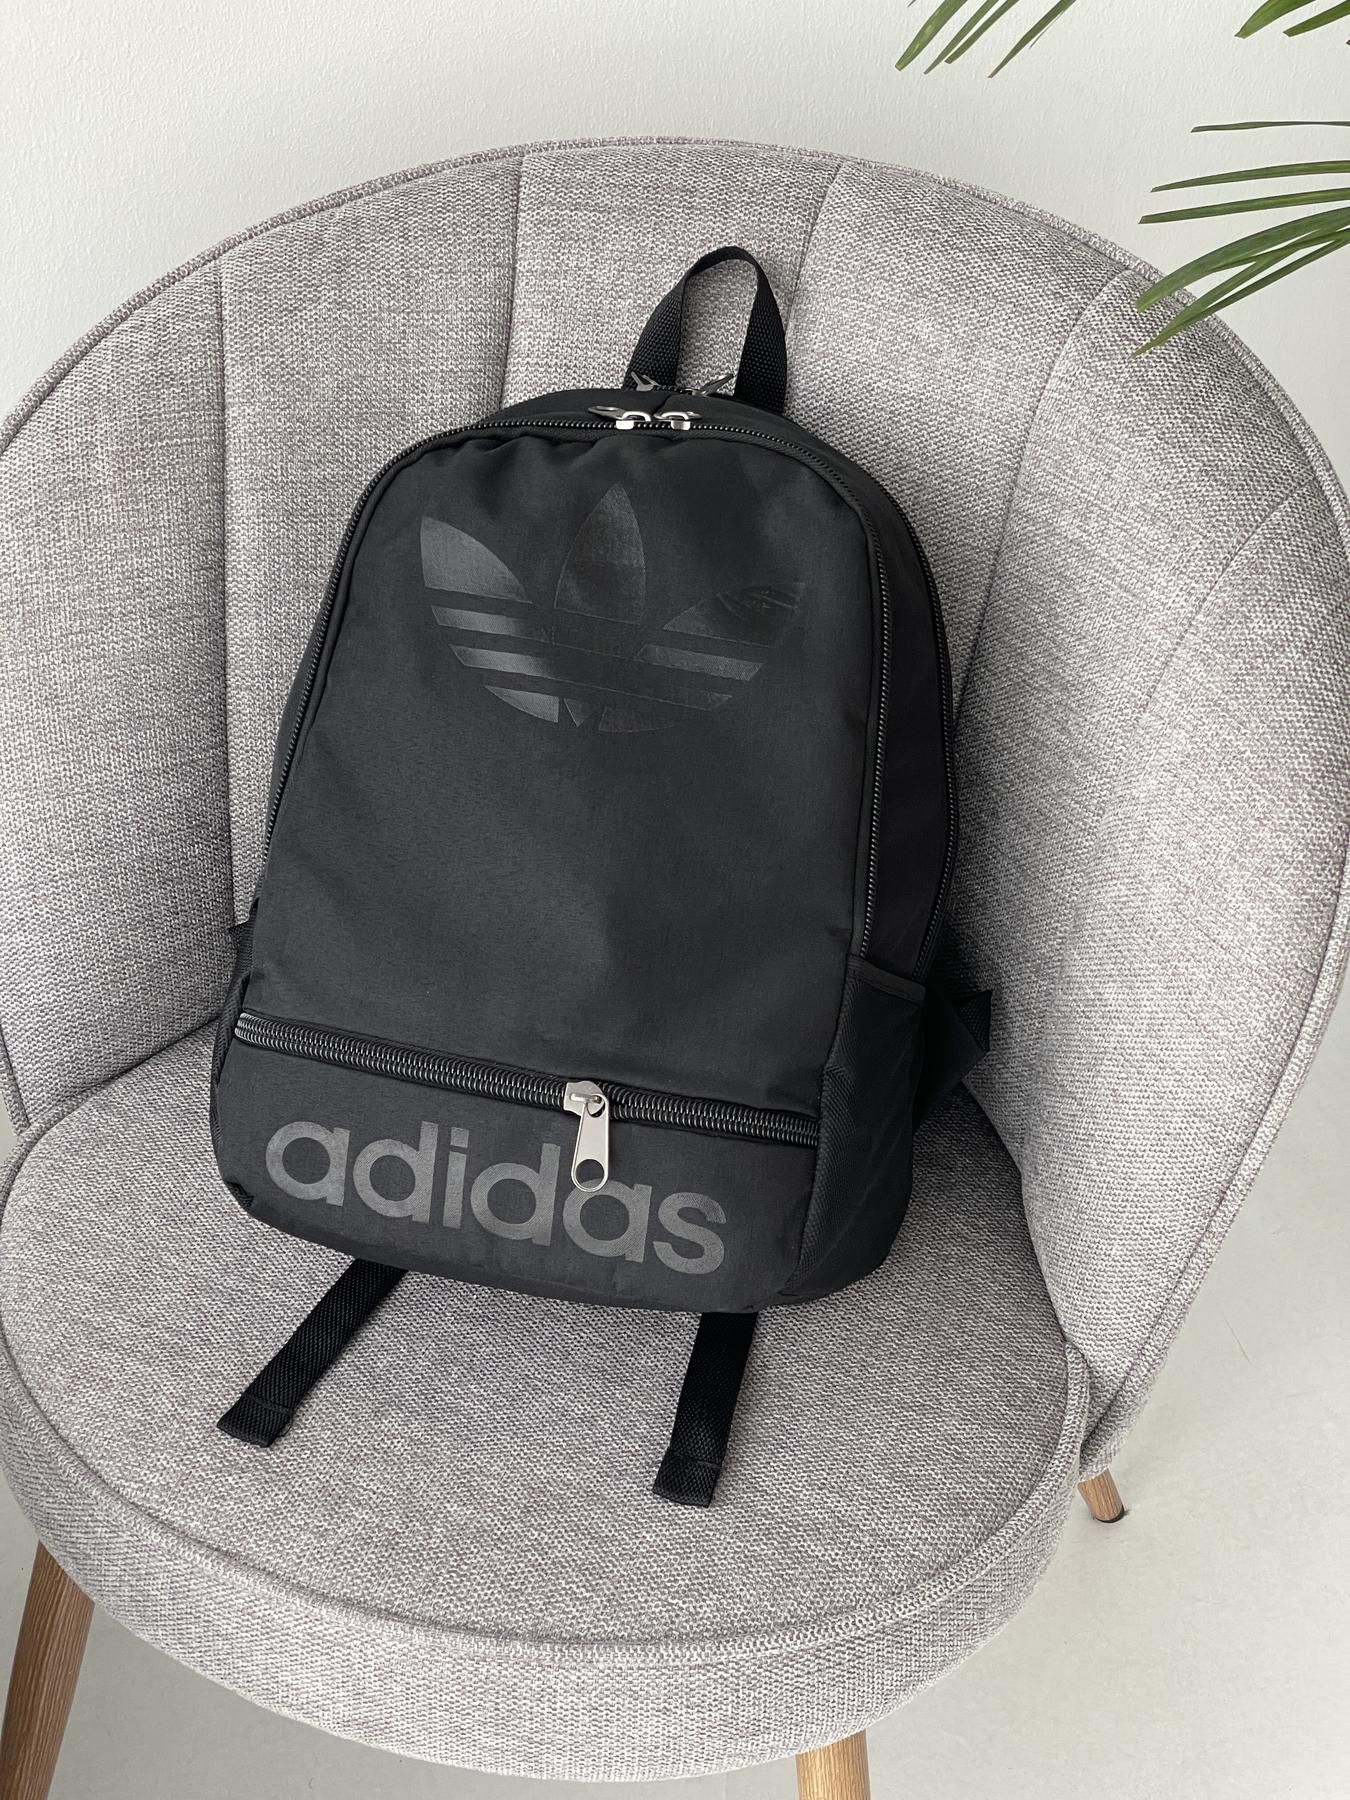 Повседневный городской рюкзак adidas, мужской черный портфель Адидас